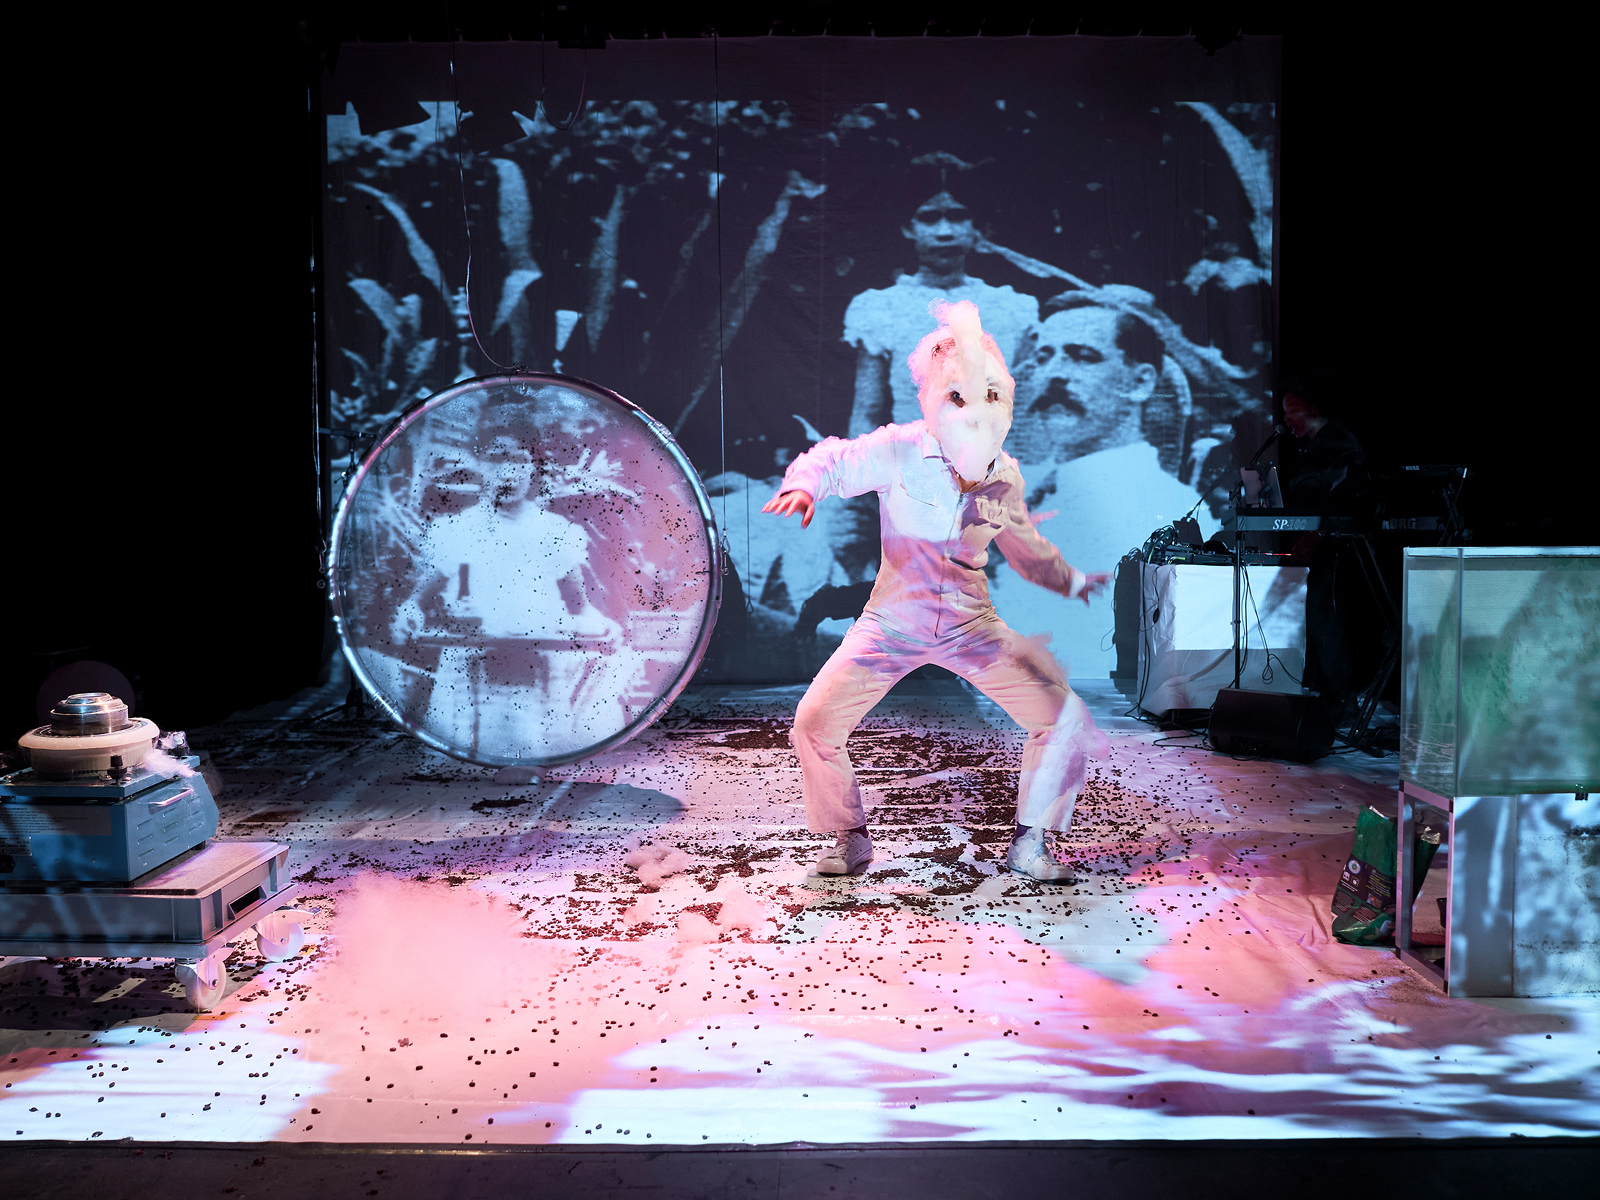 Auf der Bühne tanzt eine Performerin mit einer Maske aus Zuckerwatte vor einer Videoleinwand, auf die ein historisches Bild projeziert ist, das einen kolonial wirkenden Mann mit Schnurrbart zeigt, neben dem eine indigene Dienerin steht. Rechts im Bild ist ein Aquarium. Der Bühnenboden ist mit Kaffeebohnen bedeckt.